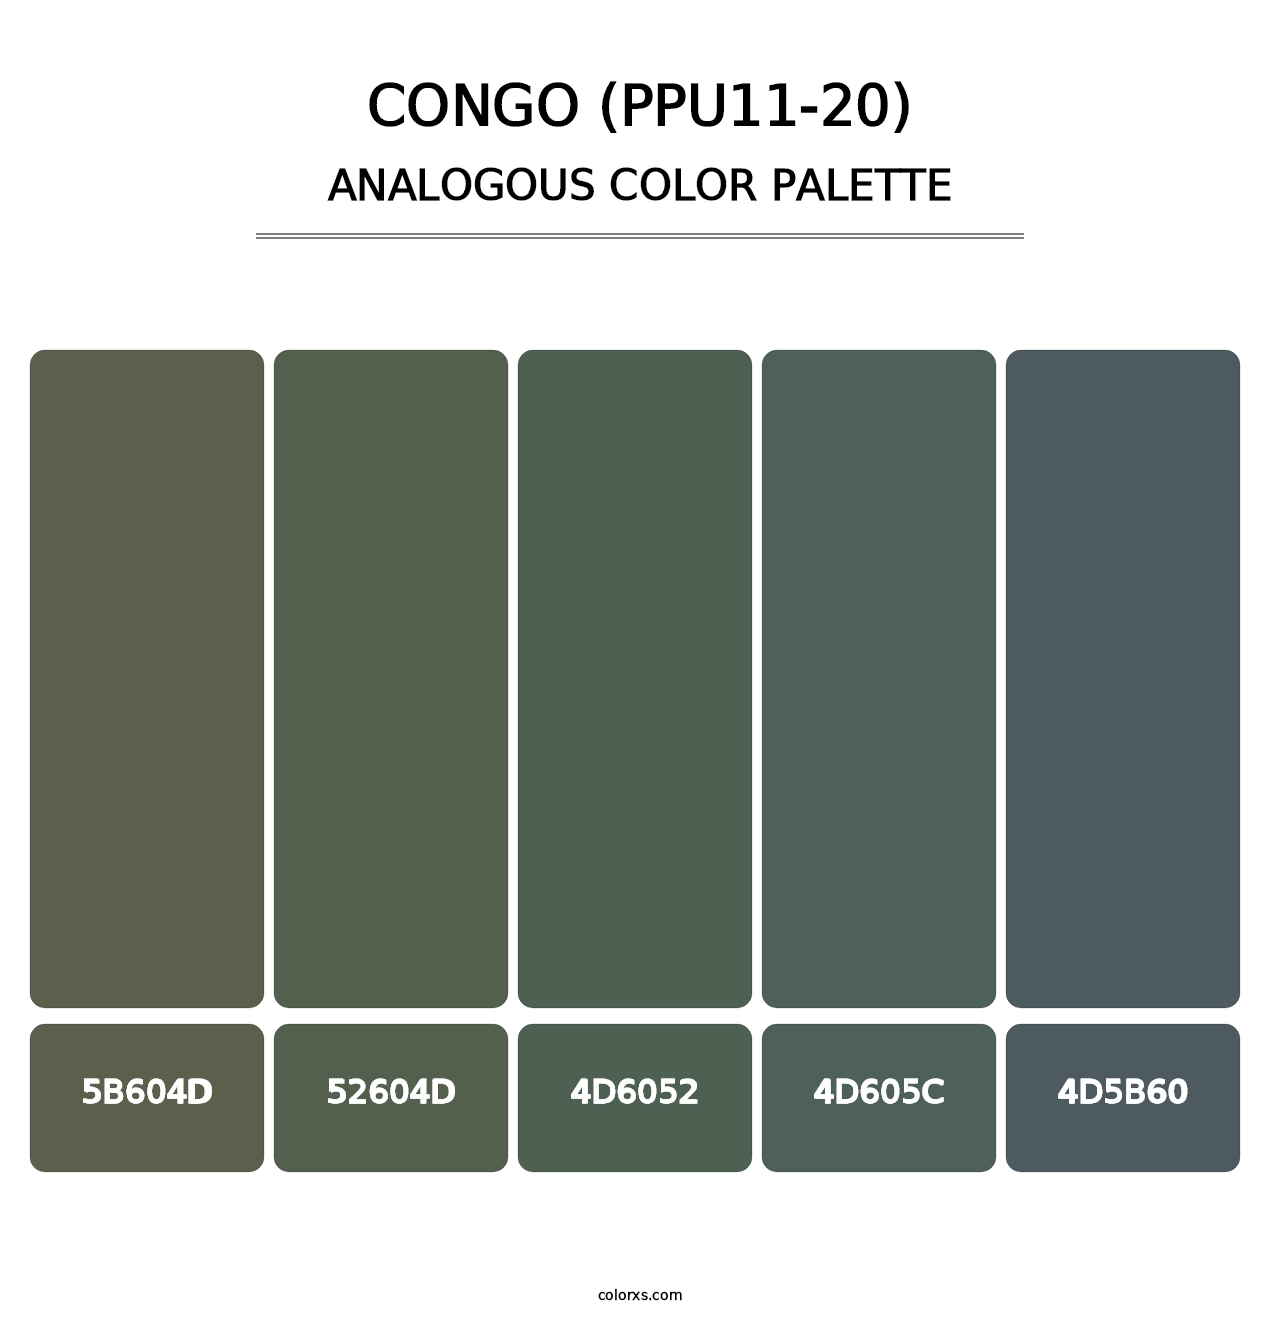 Congo (PPU11-20) - Analogous Color Palette